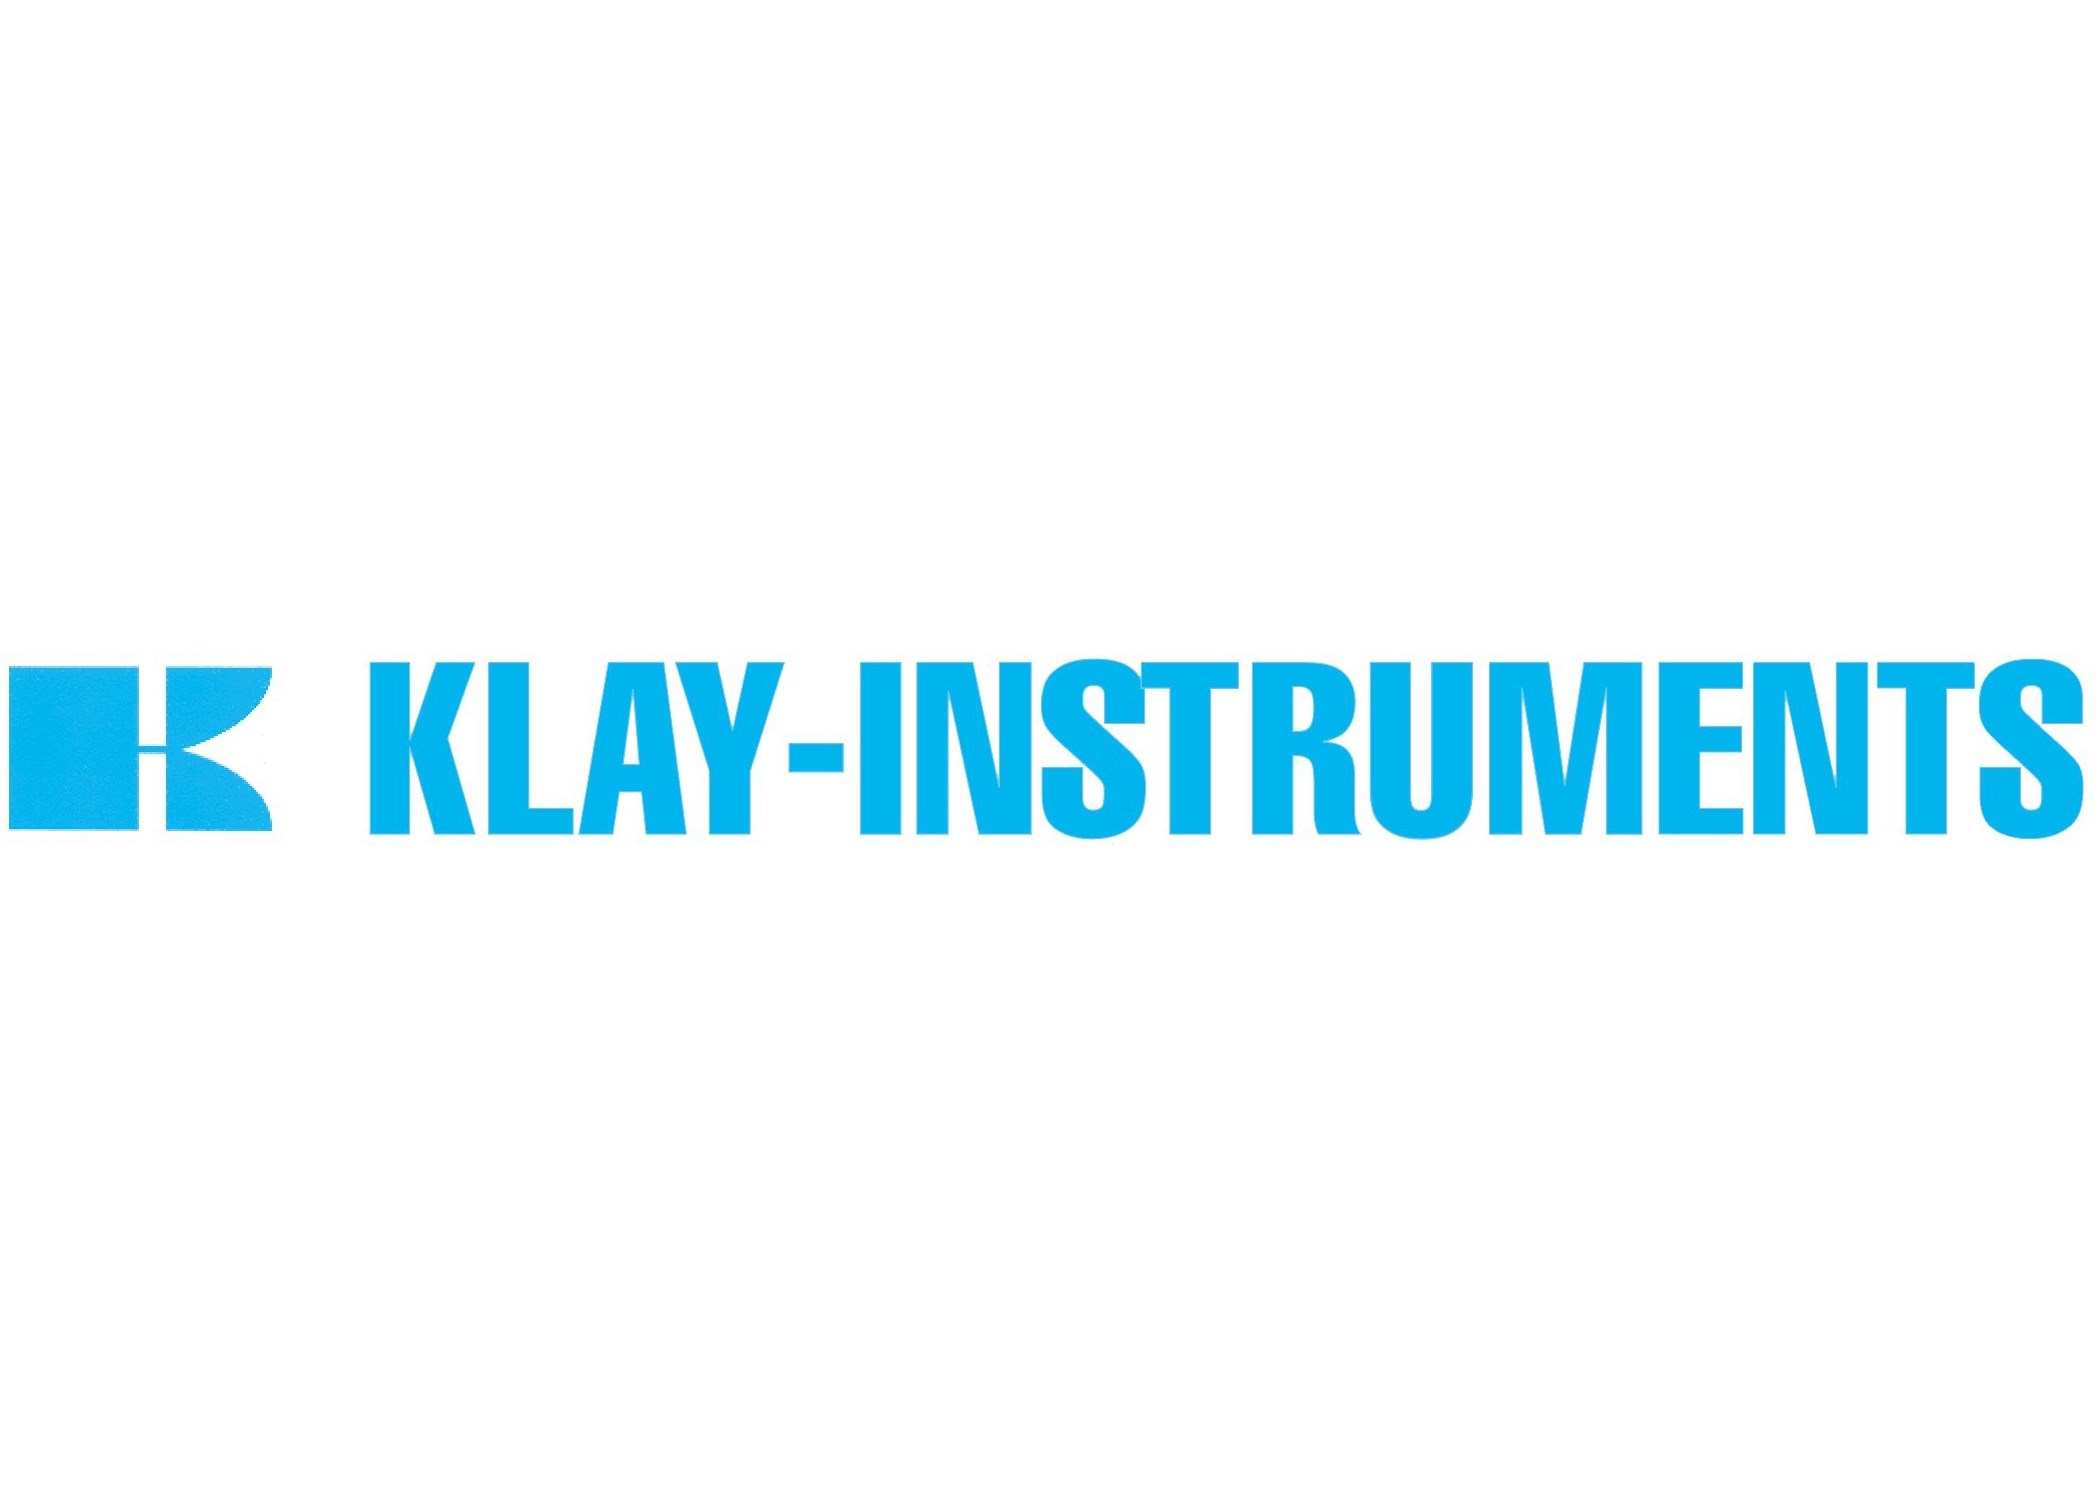 Je bekijkt nu Klay Instruments sluit zich aan bij PI Nederland